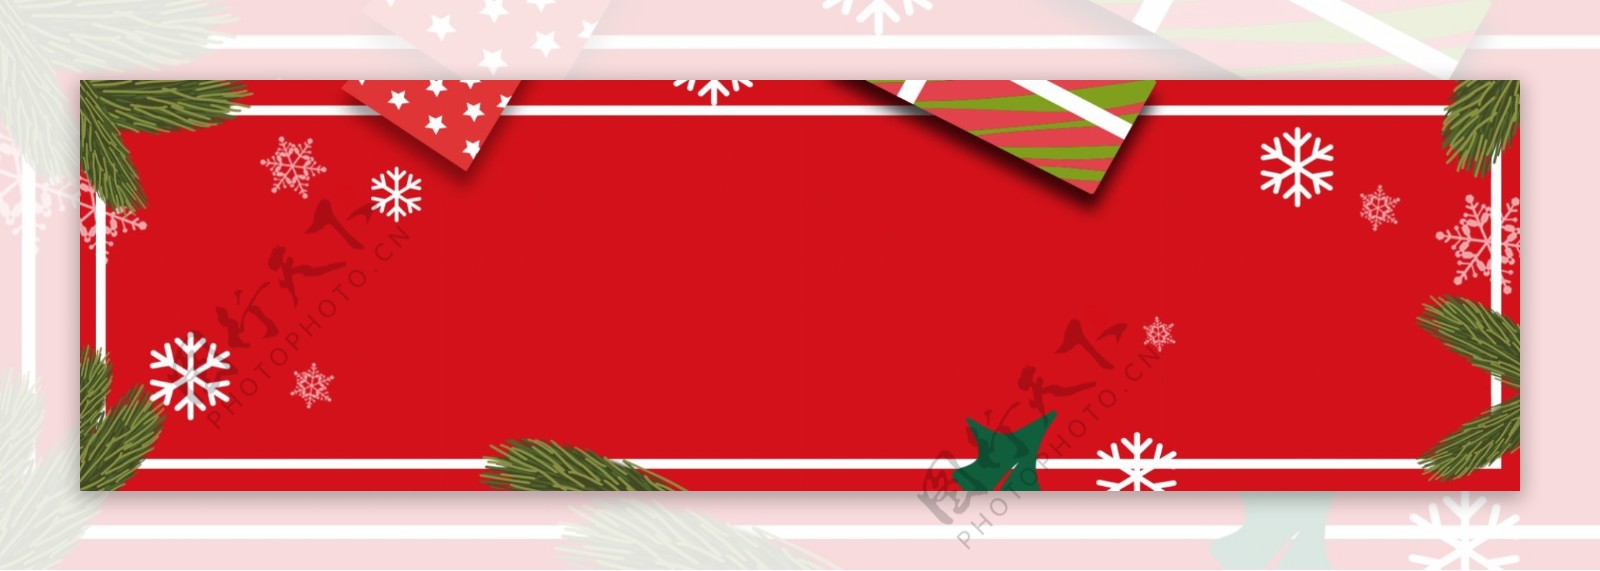 手绘手套圣诞节卡通banner背景